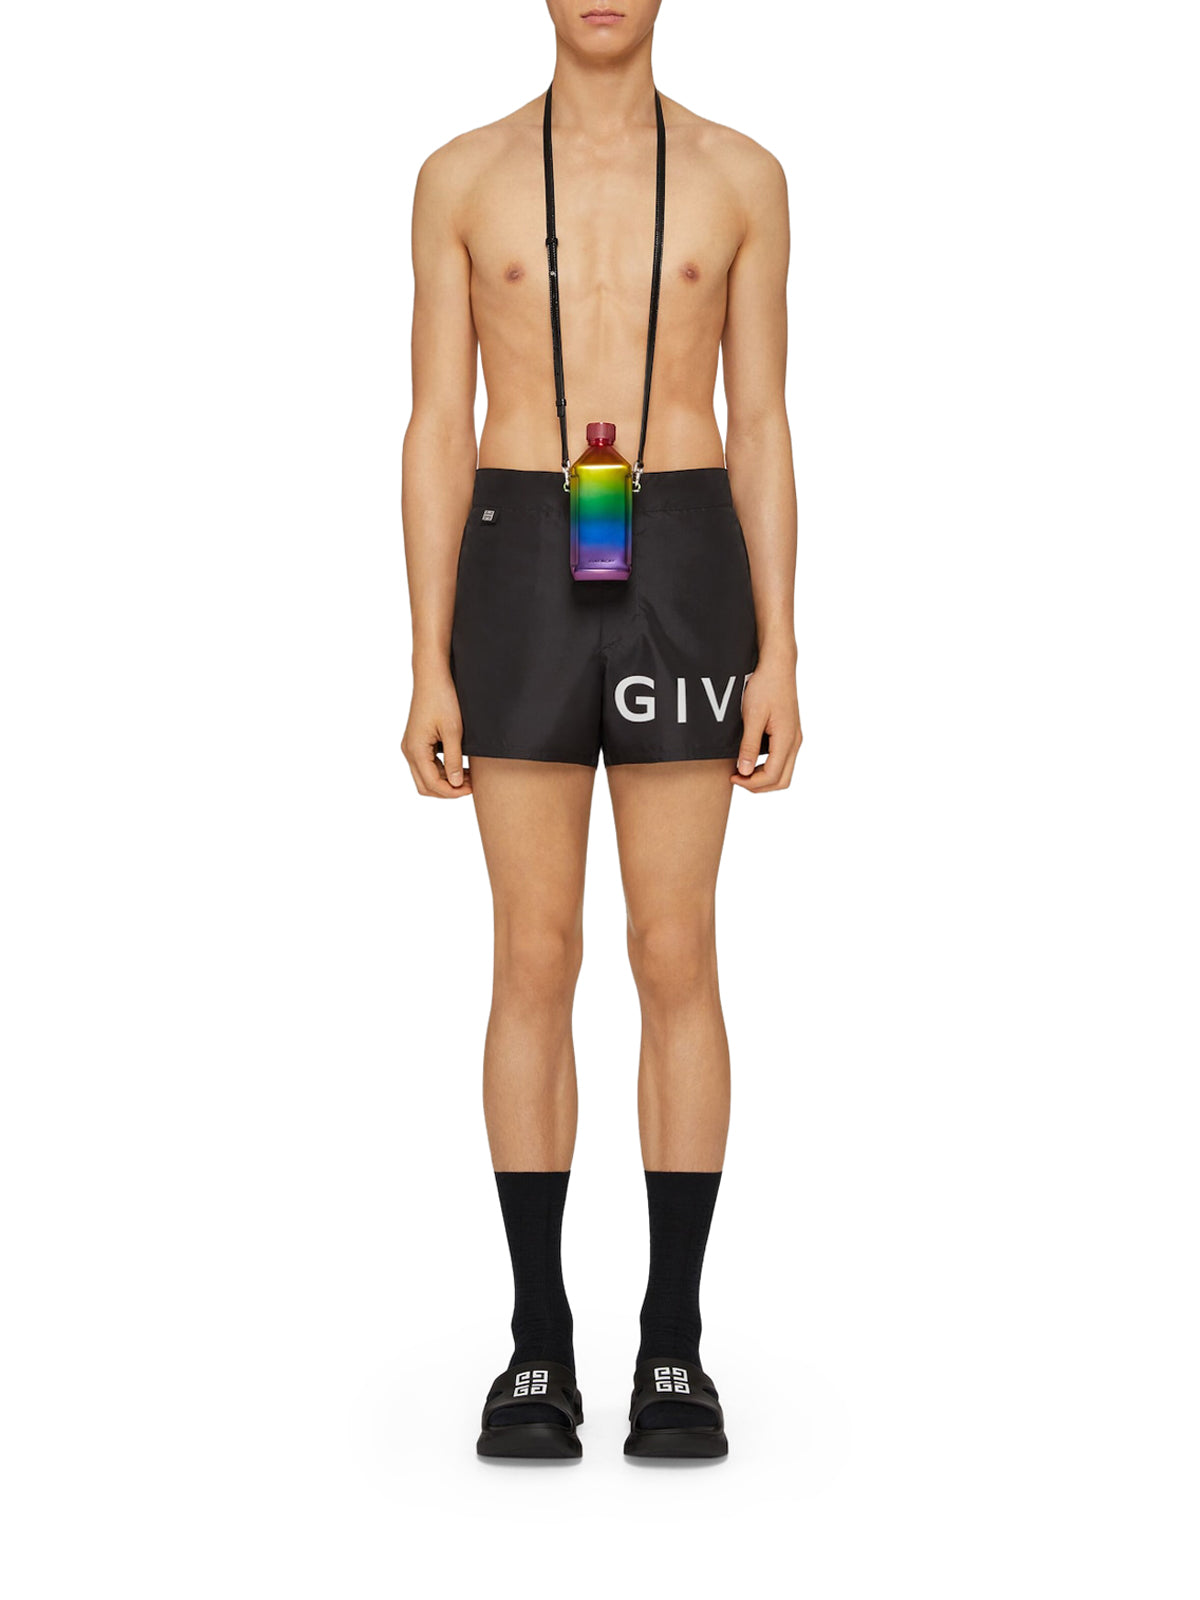 Swim shorts in GIVENCHY 4G nylon